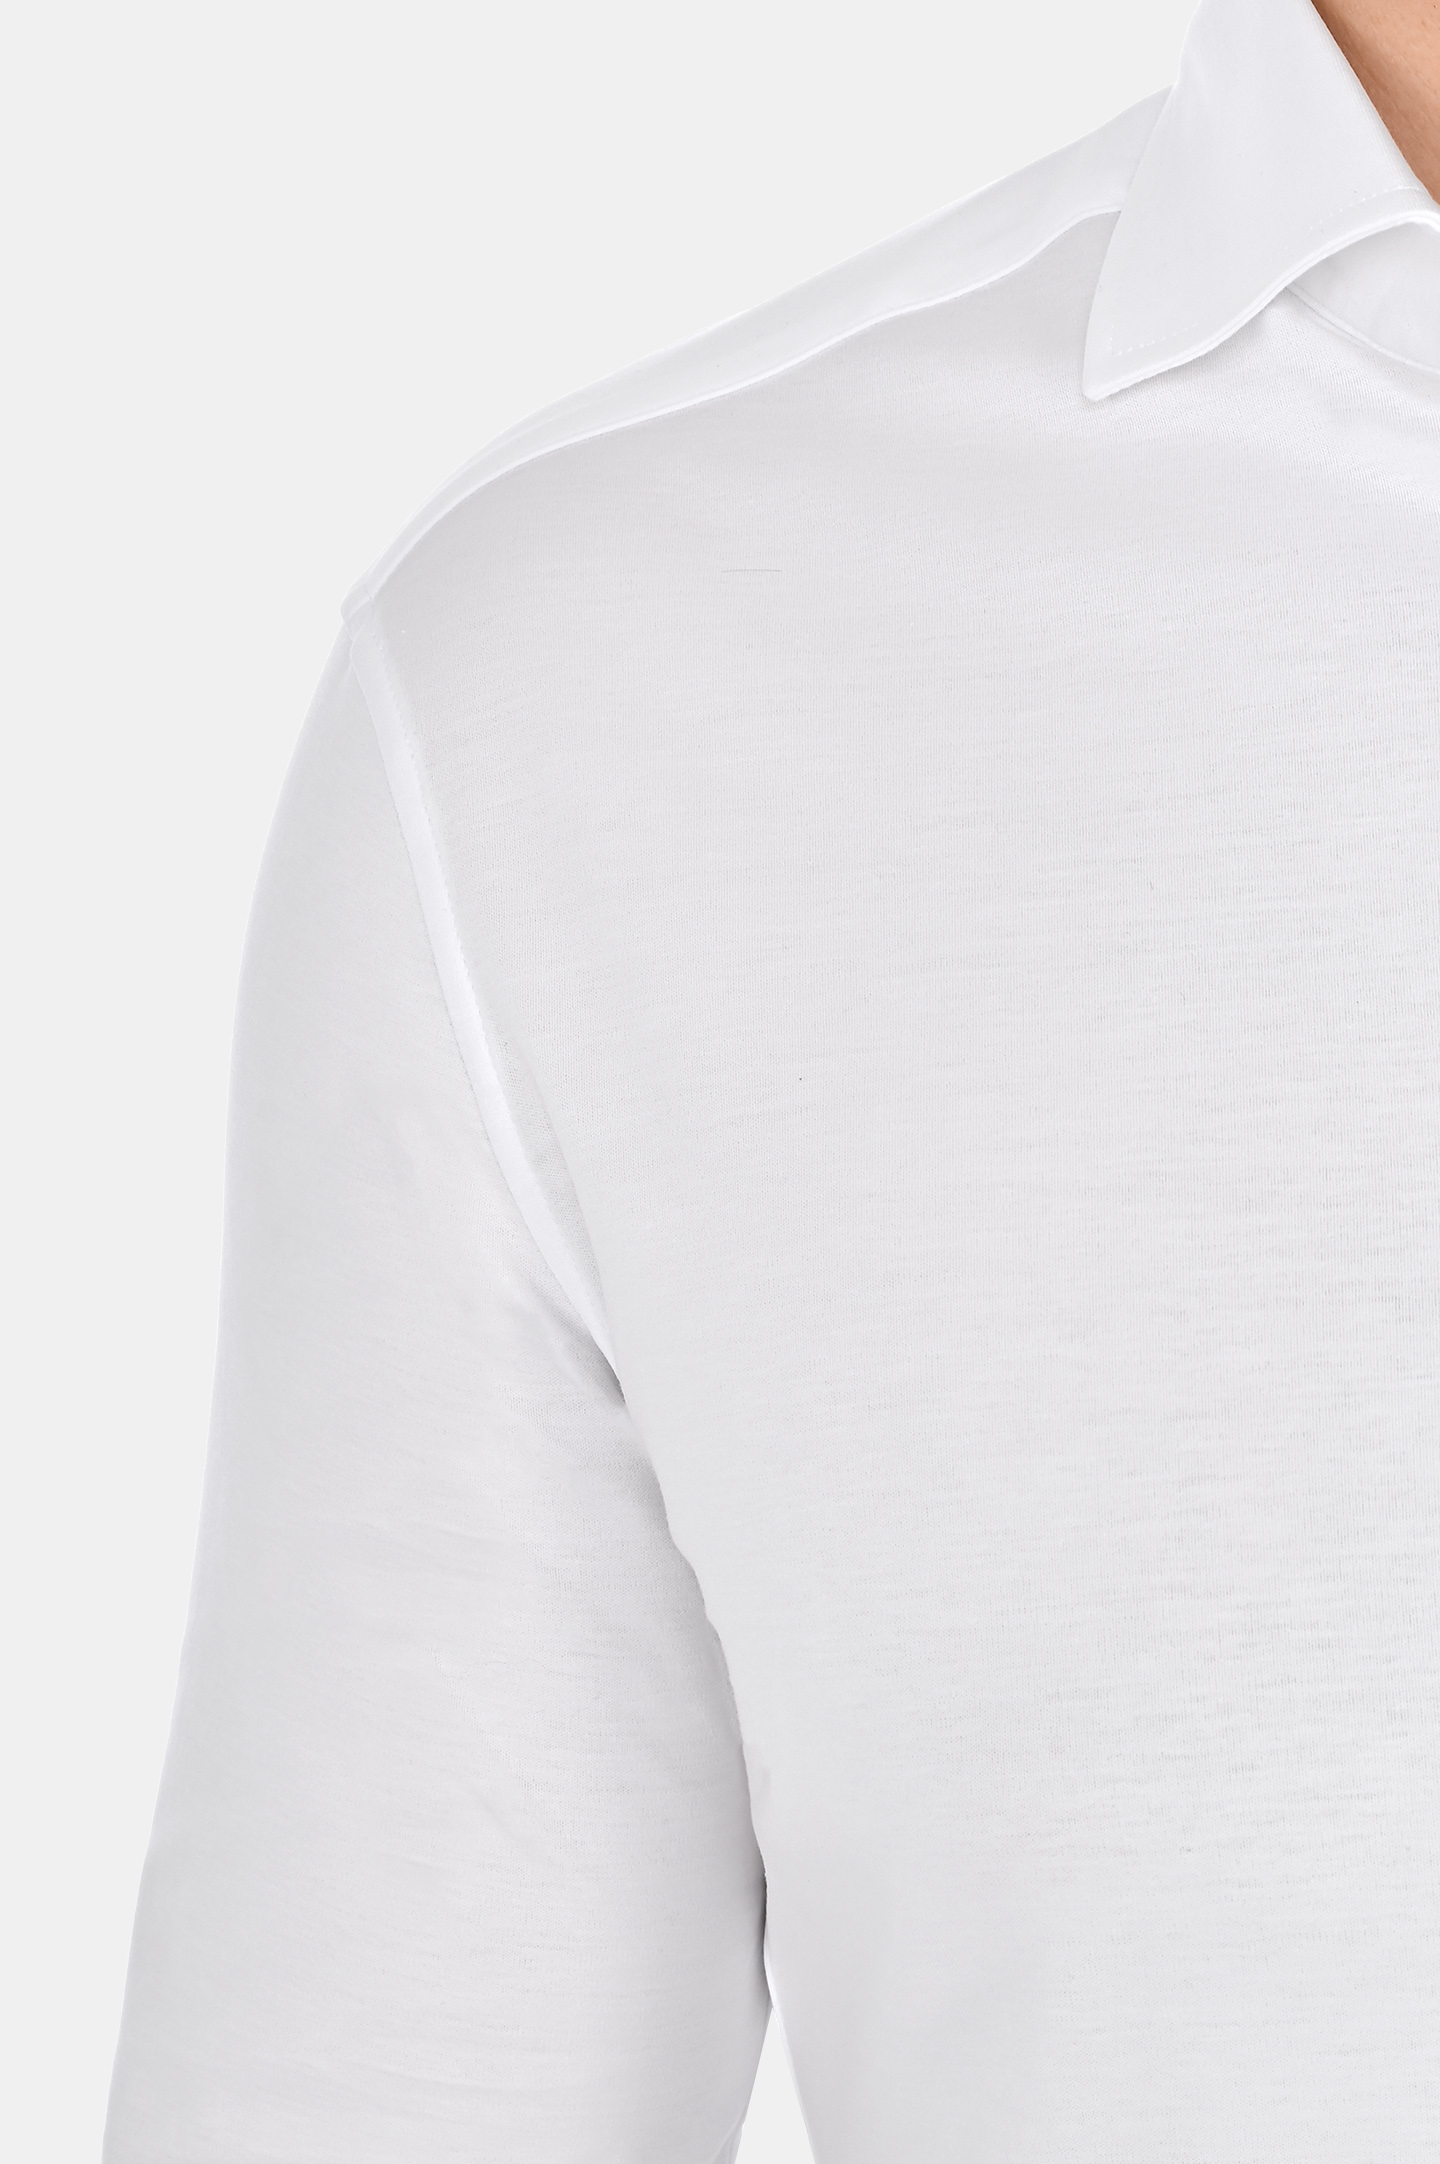 Классическая рубашка из хлопка BRUNELLO  CUCINELLI M0B136686, цвет: Белый, Мужской